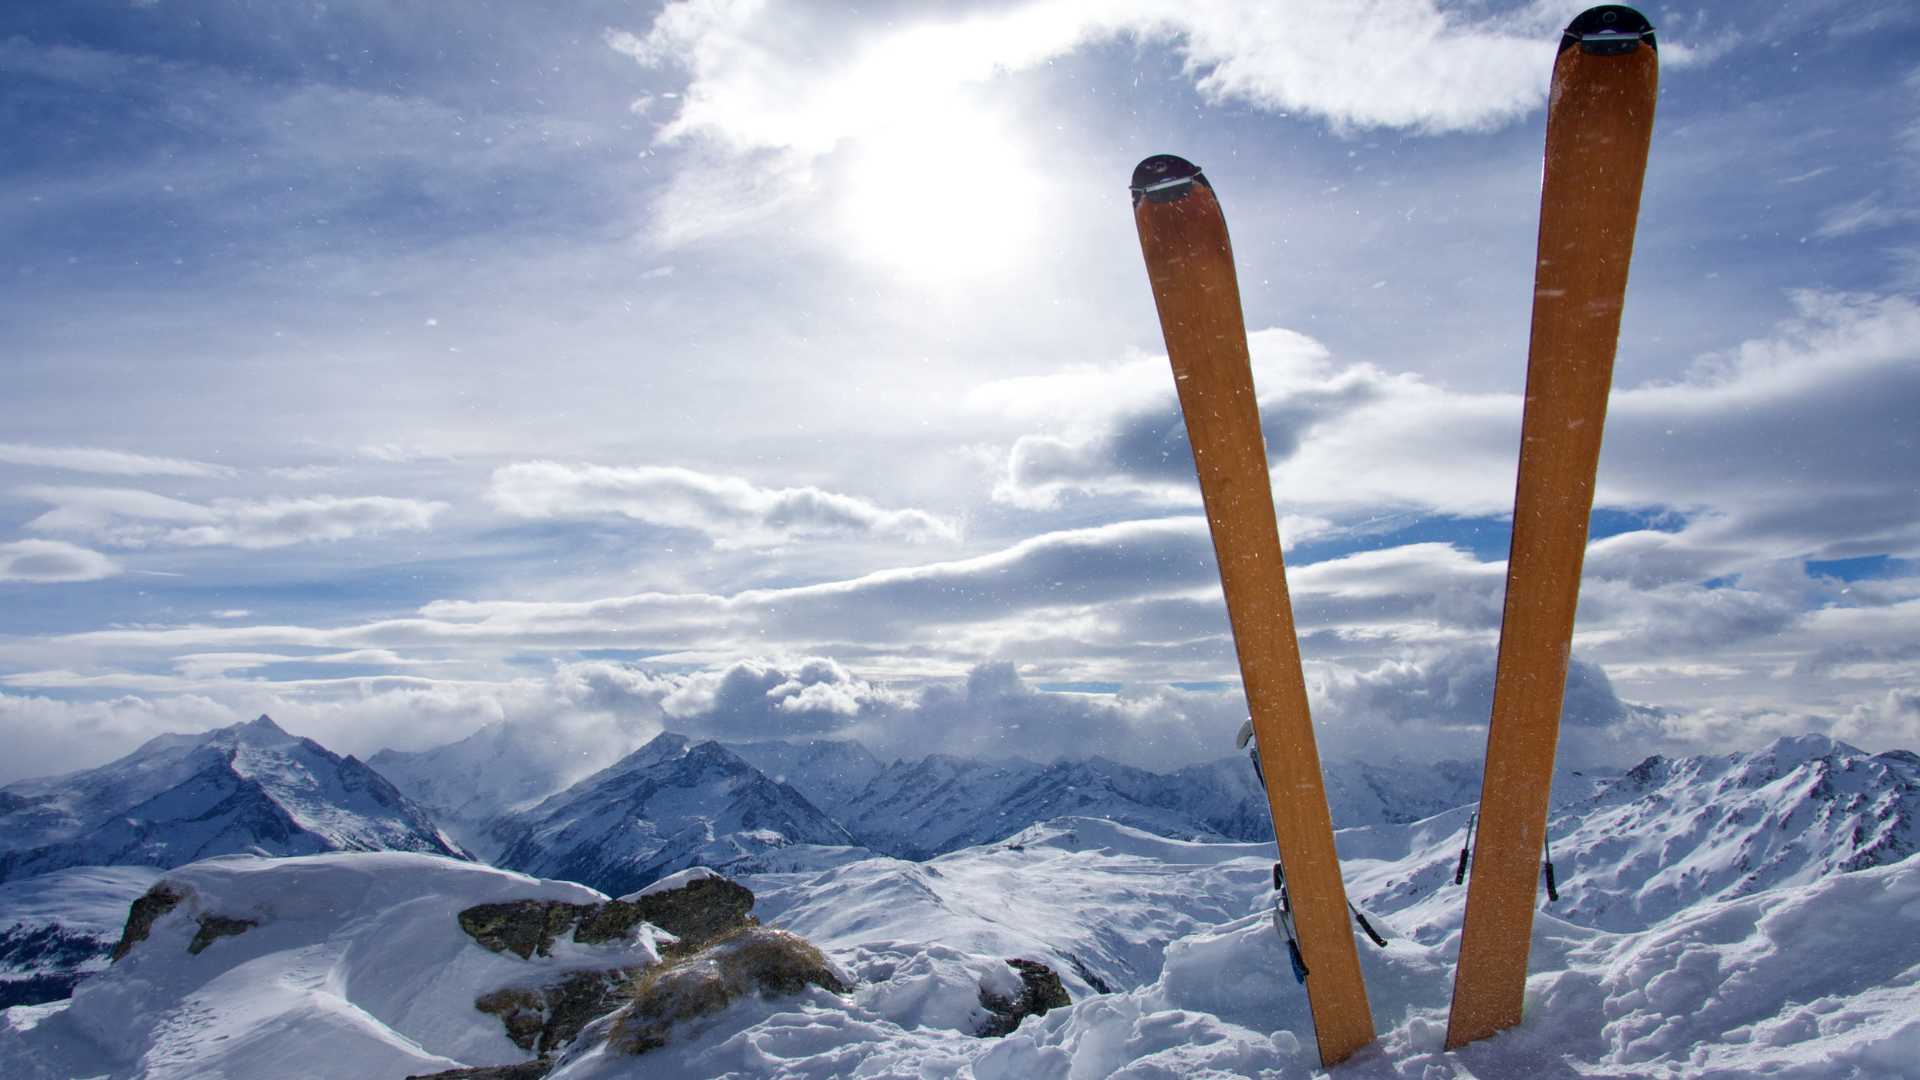 sieles ausztriaban ovatosan A síelés világhírű hazája, Ausztria ideális üdülőhely mindazok számára, akik szeretnek síelni, de az üde alpesi tájak miatt azoknak is, akik nem.